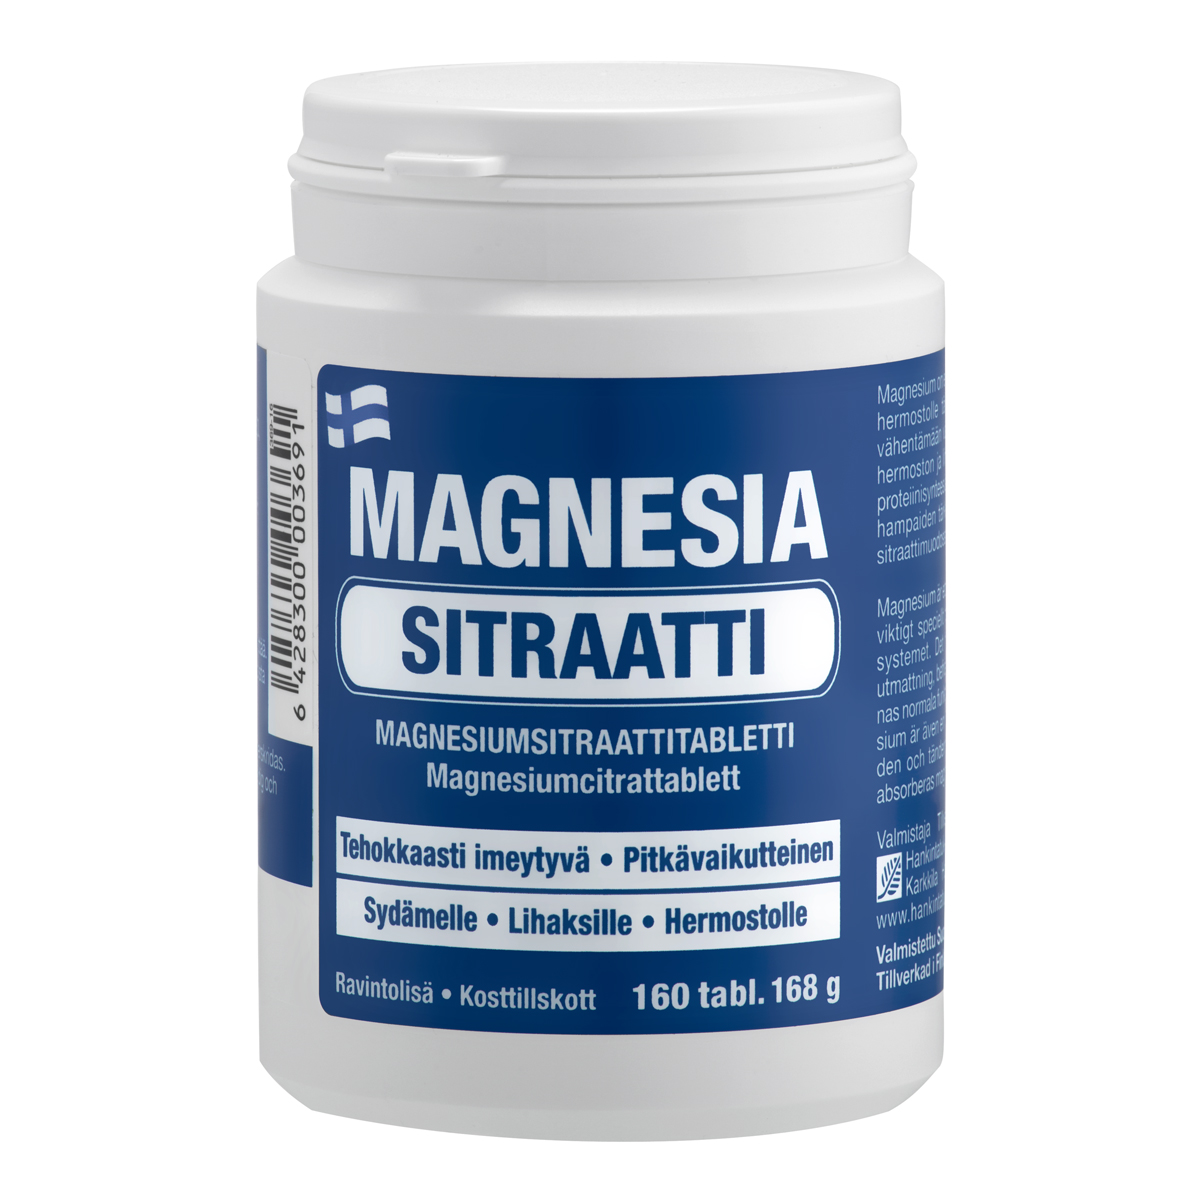 magnesia-sitraatti-160-tabl